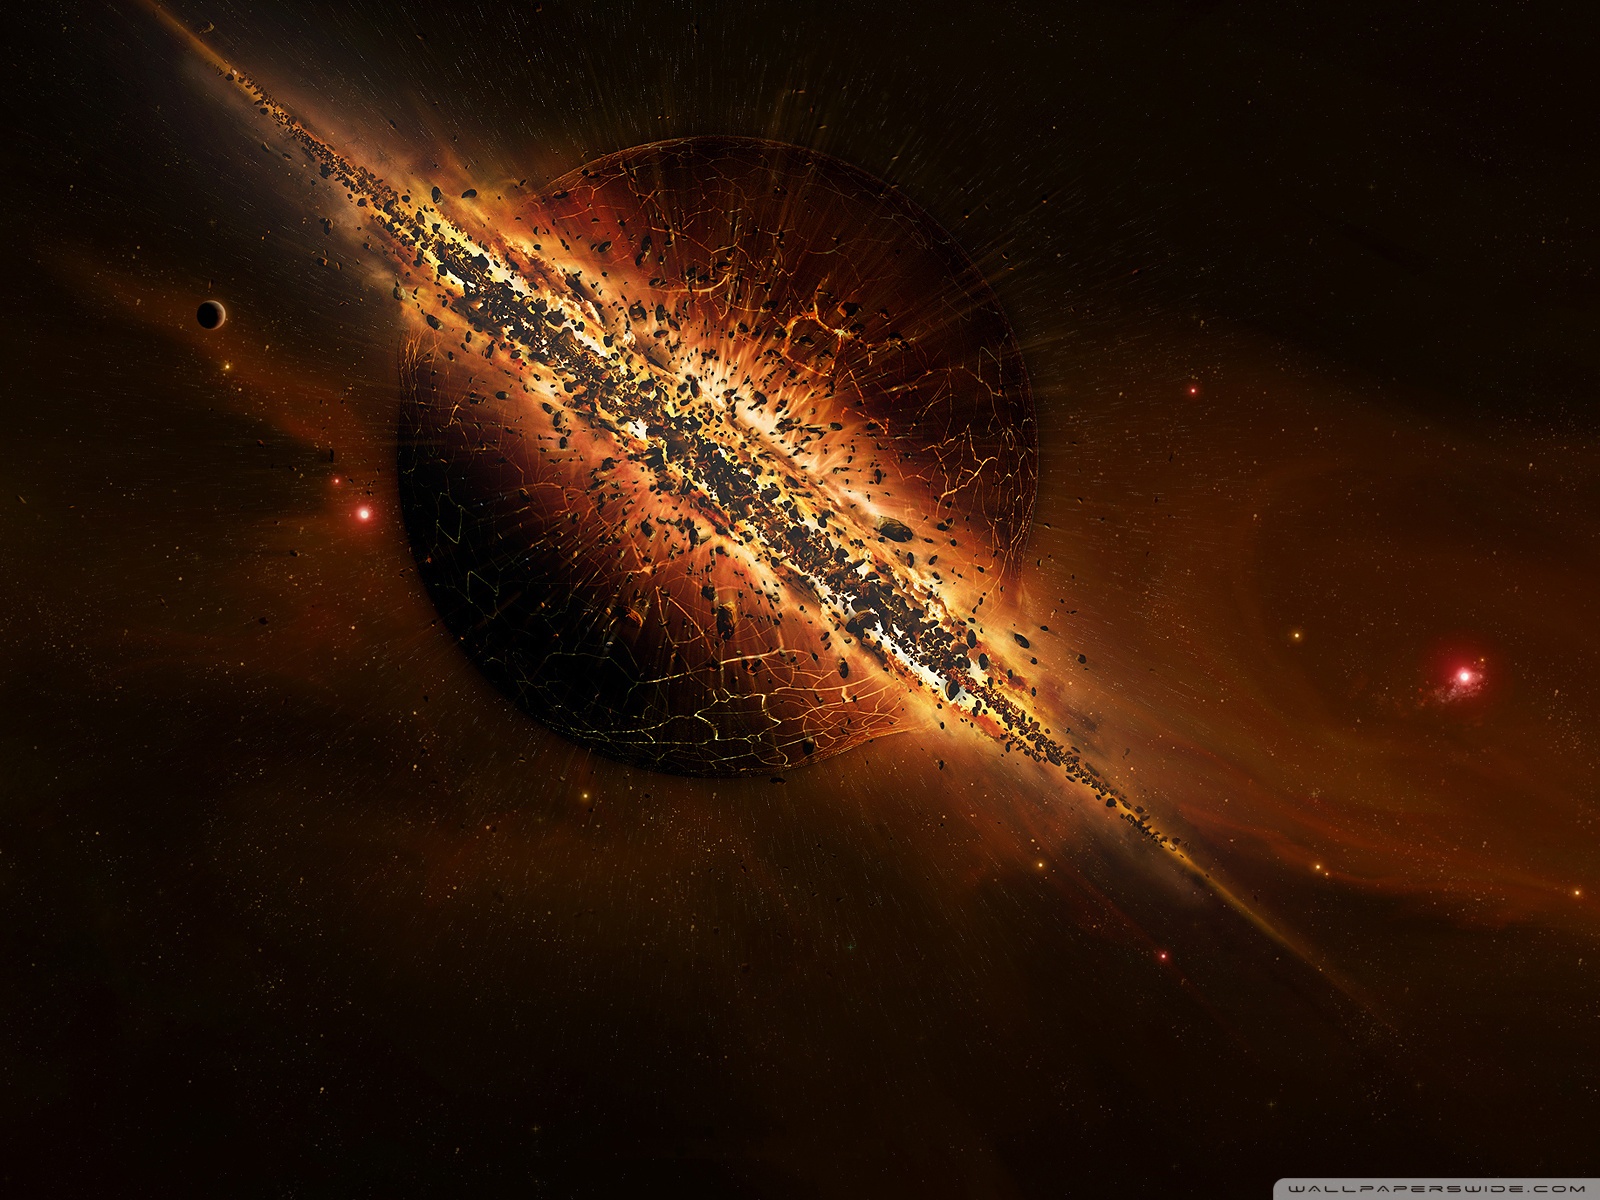 Planet Destruction 4 Ultra HD Desktop Background Wallpaper for 4K UHD TV, Tablet